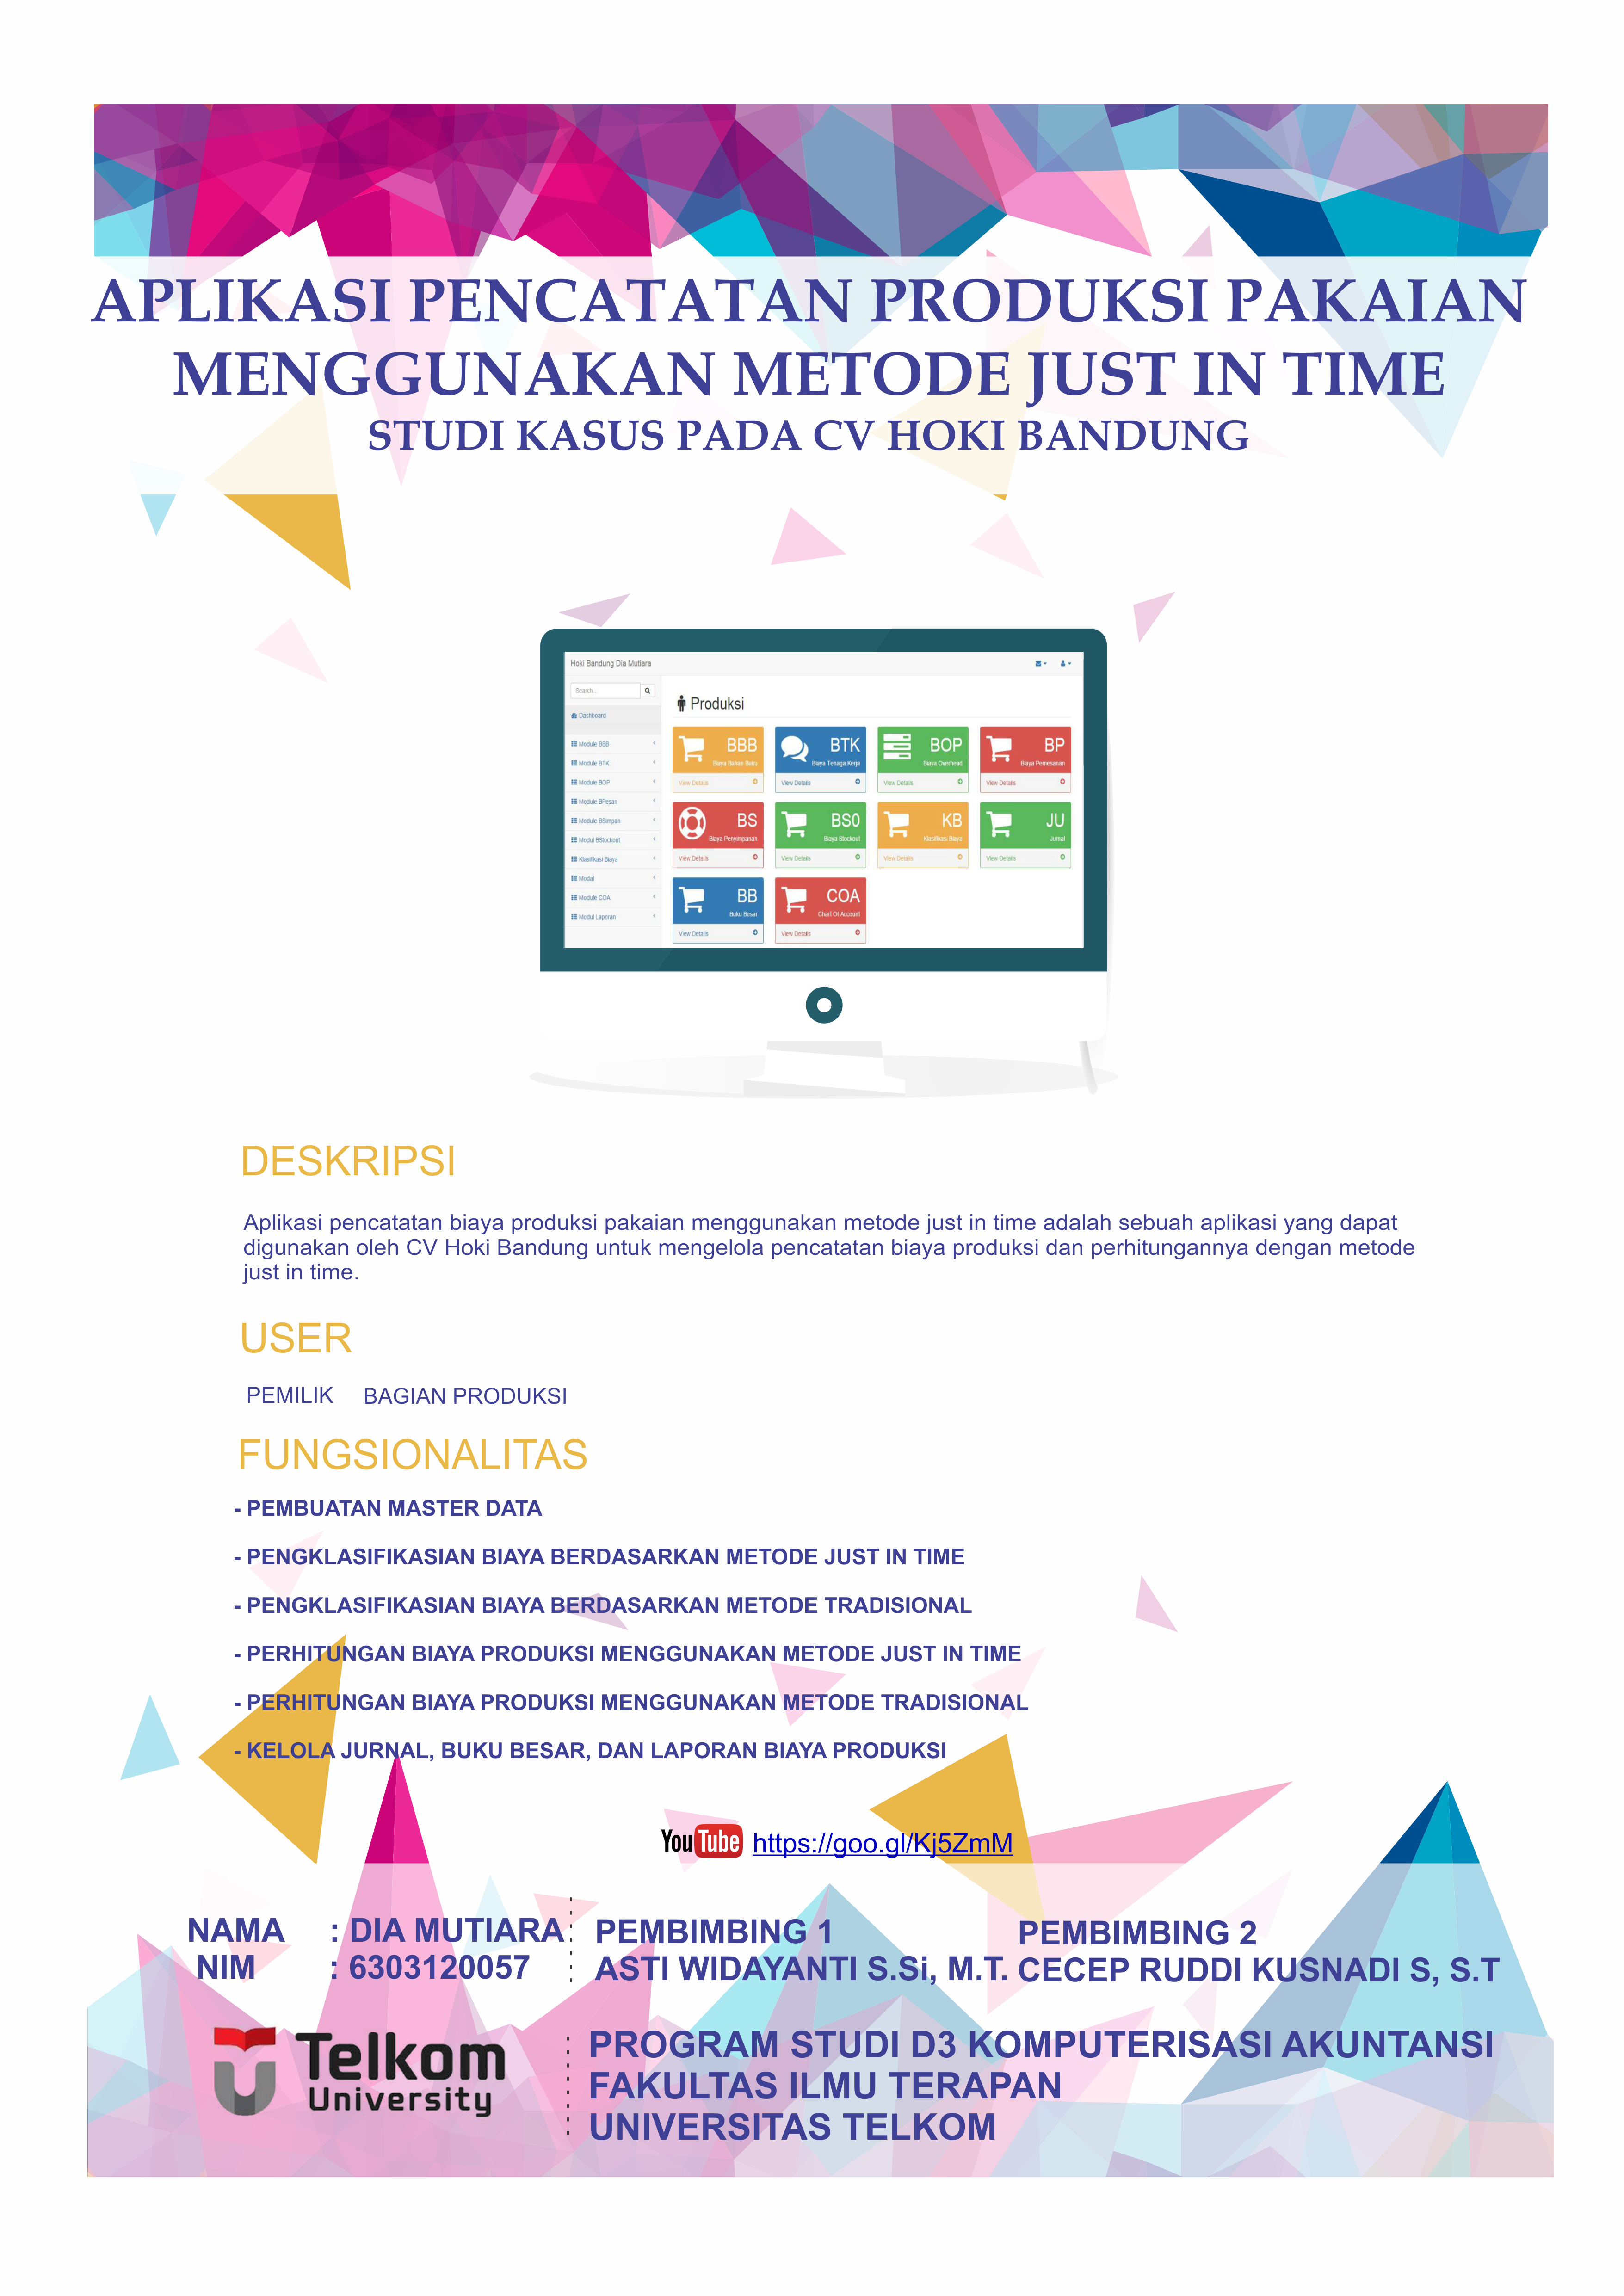 Aplikasi Pencatatan Produksi Pakaian Menggunakan Metode Just In Time (Studi Kasus Pada CV ABC Bandung)